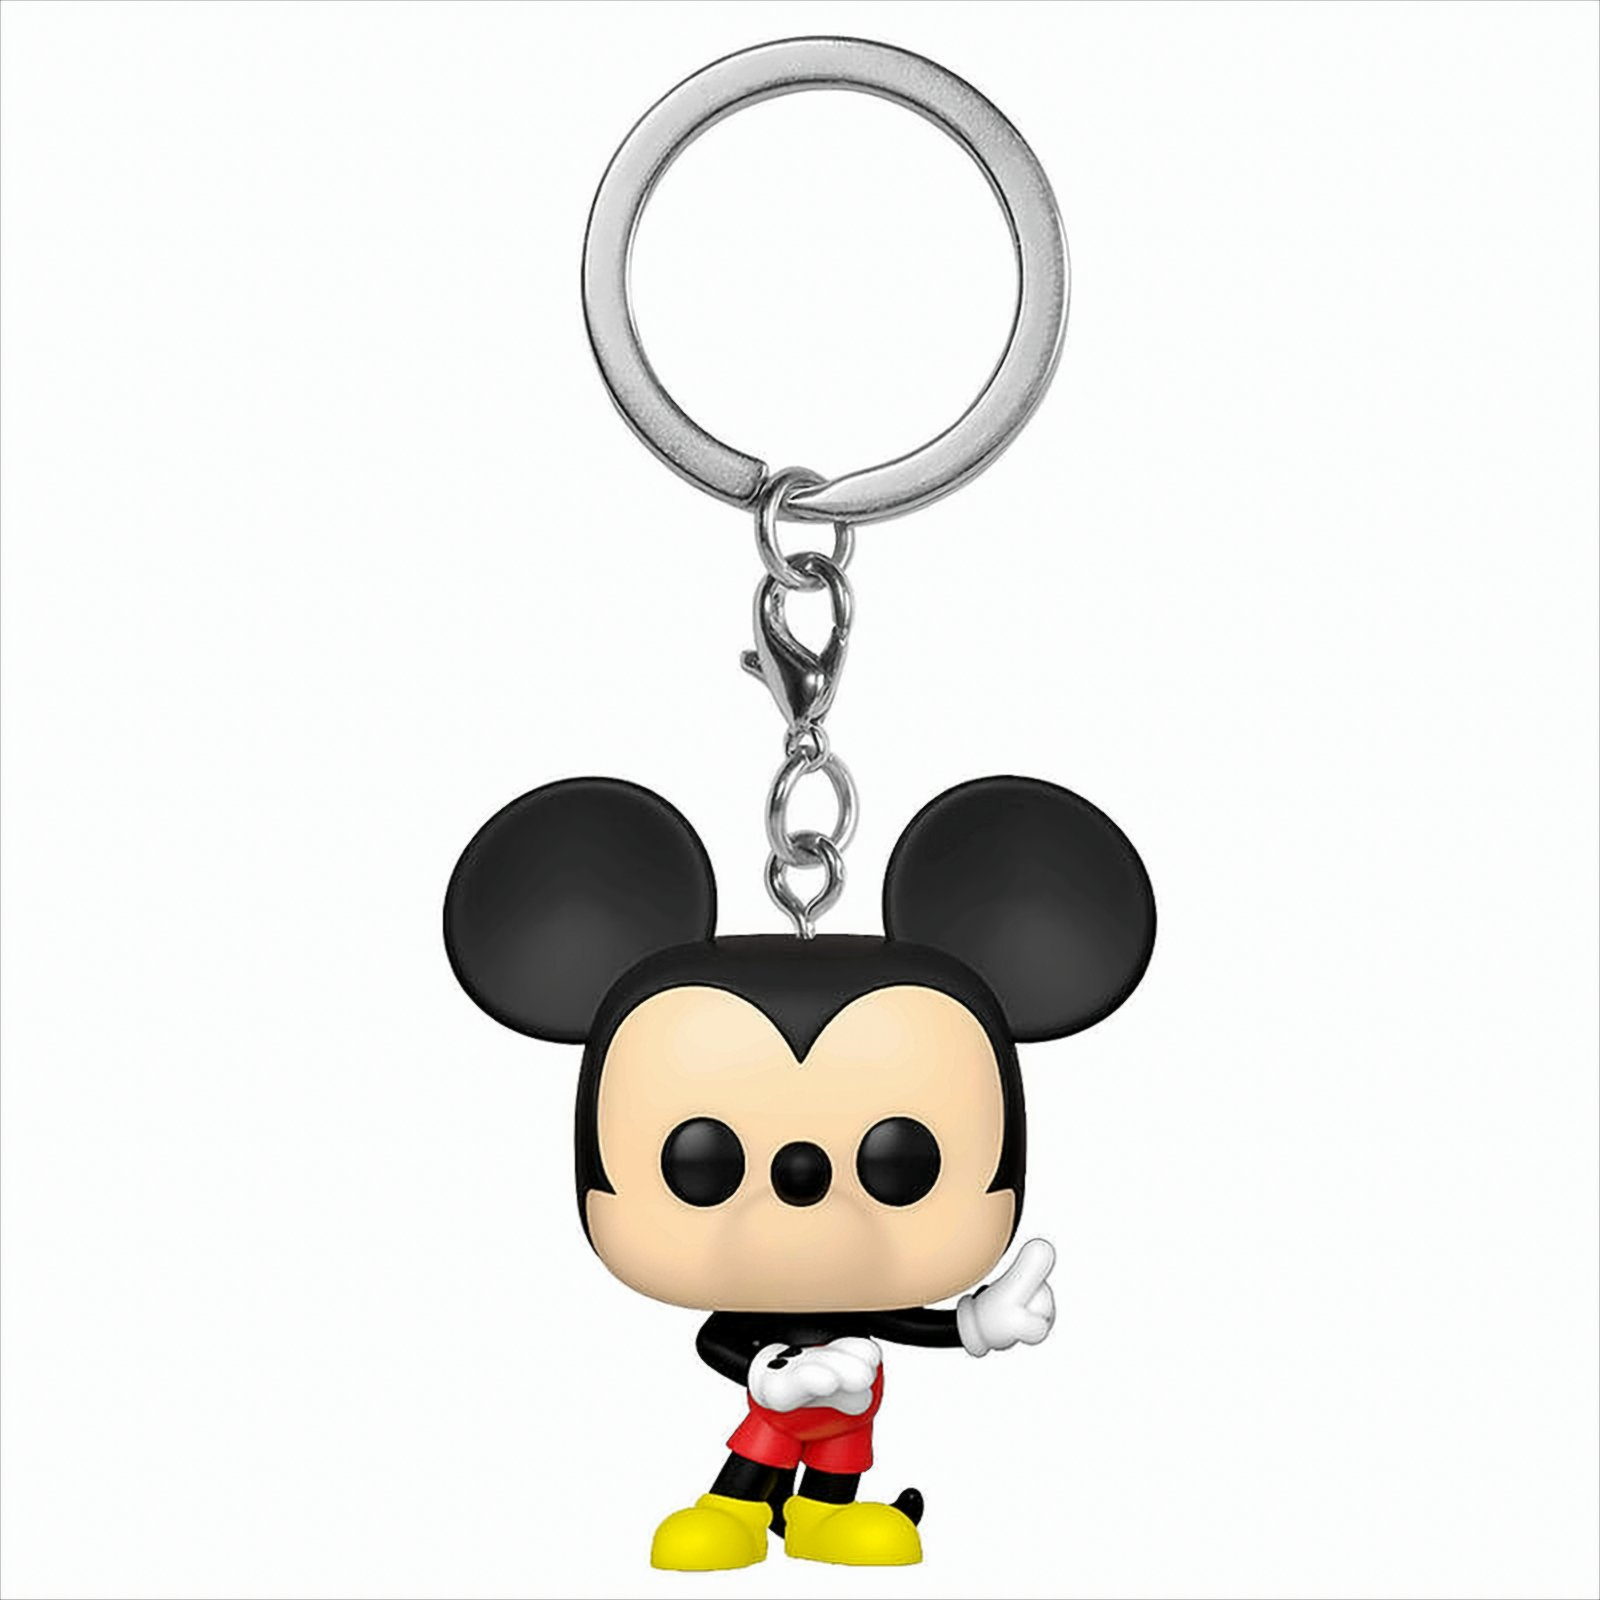 POP Mickey Keychain Disney and Mickey Friends -